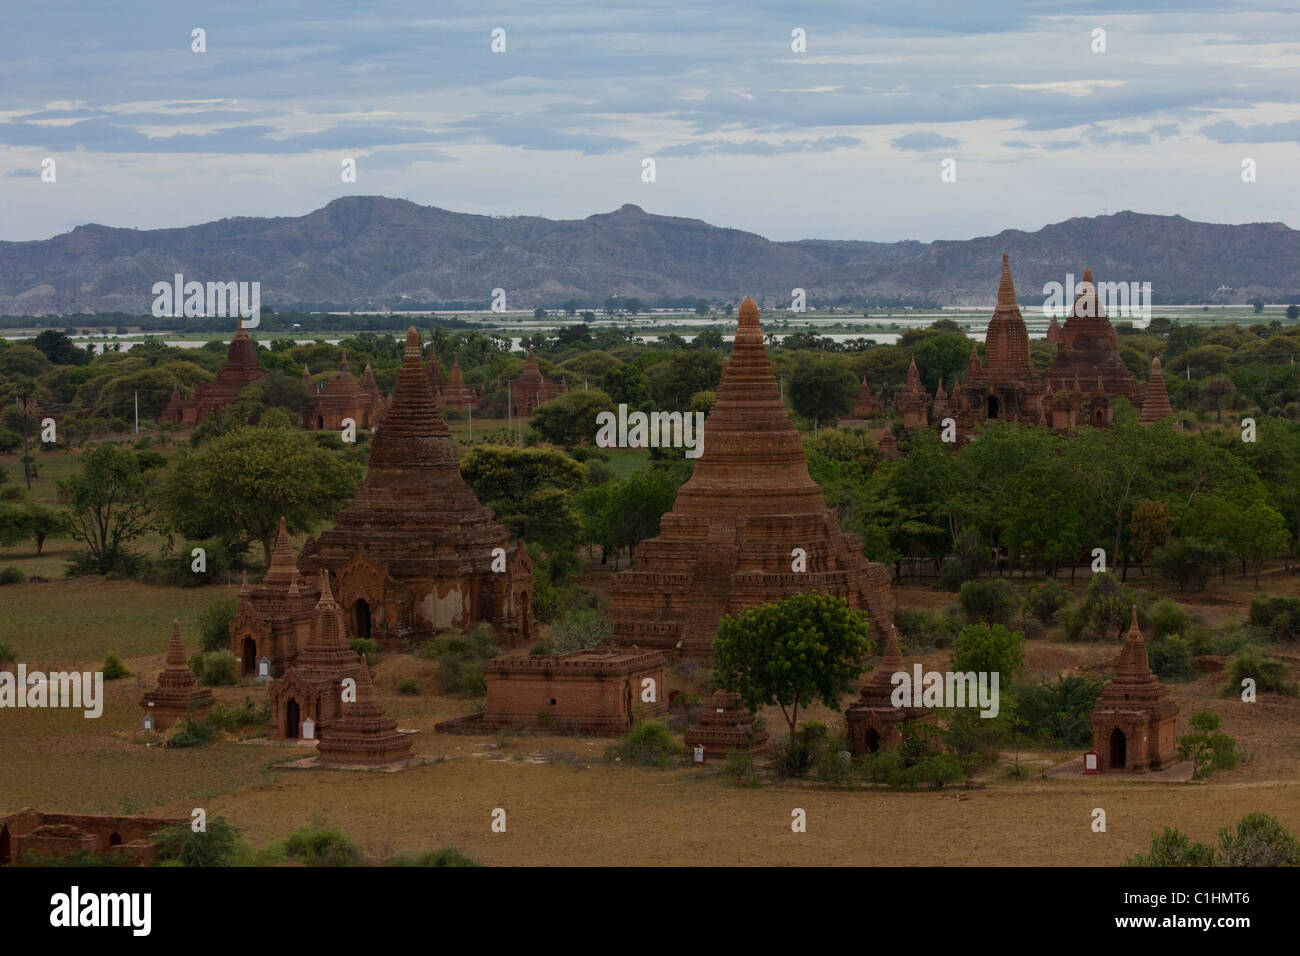 view of temples at Bagan, Myanmar Stock Photo